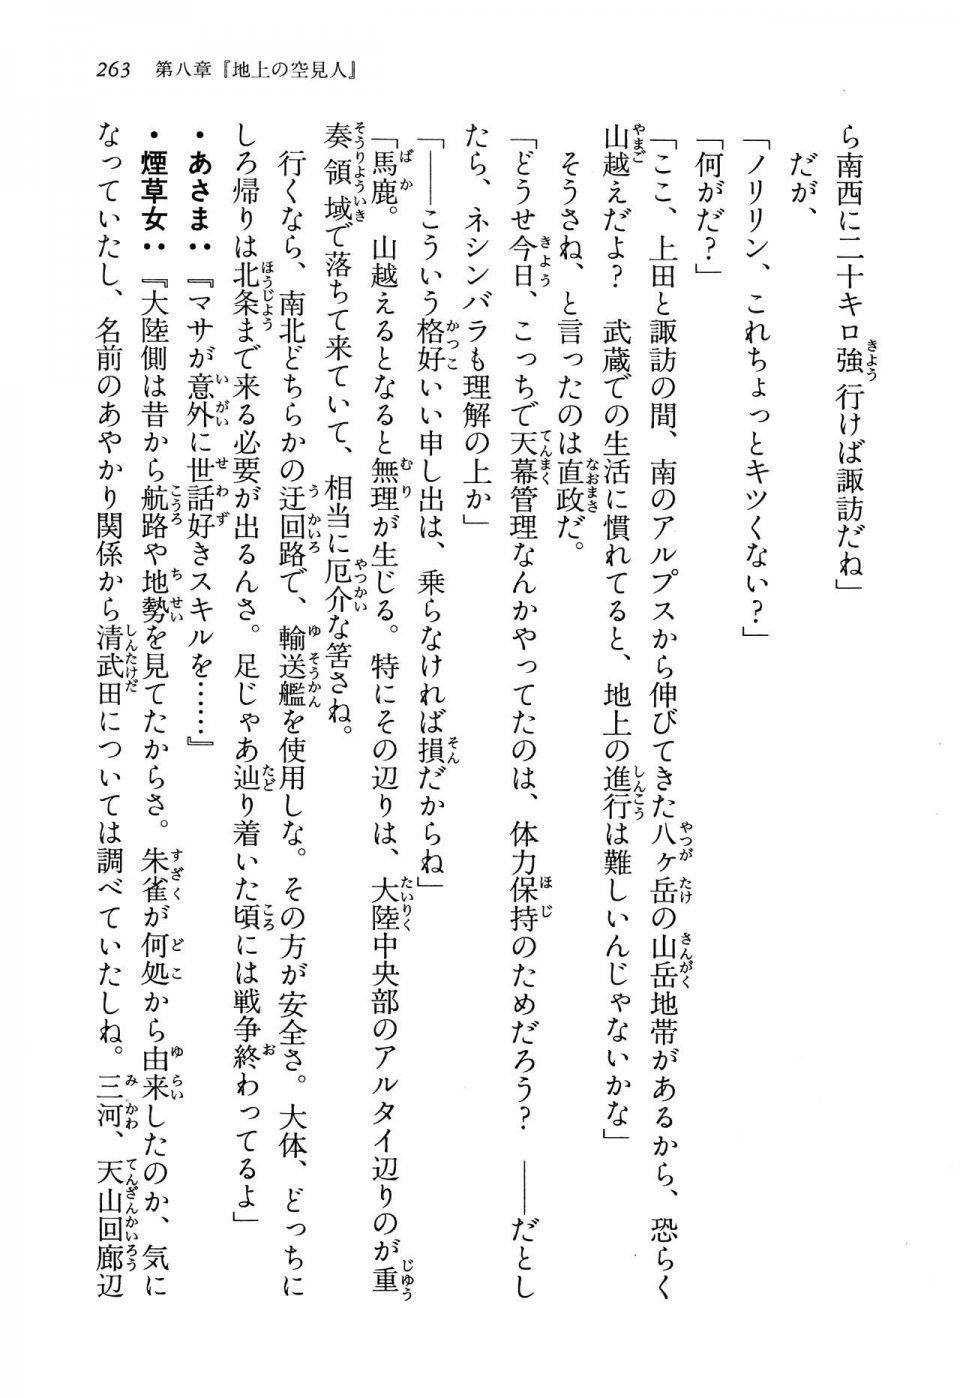 Kyoukai Senjou no Horizon LN Vol 13(6A) - Photo #263